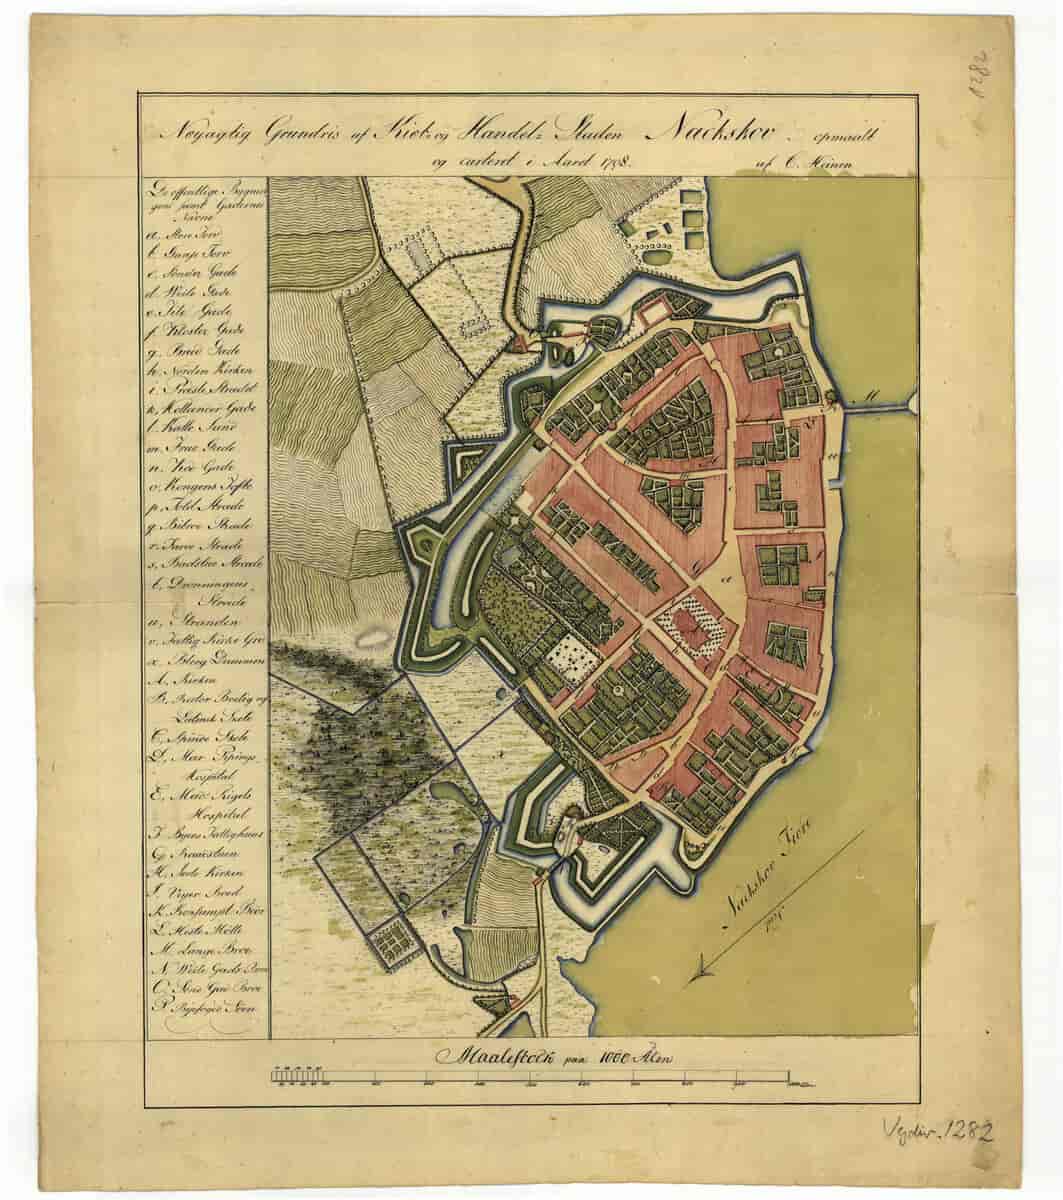 Nøyagtig Grundris af Kiøb- og Handels Staden Nackskov opmaalt og carteret i Aaret 1798